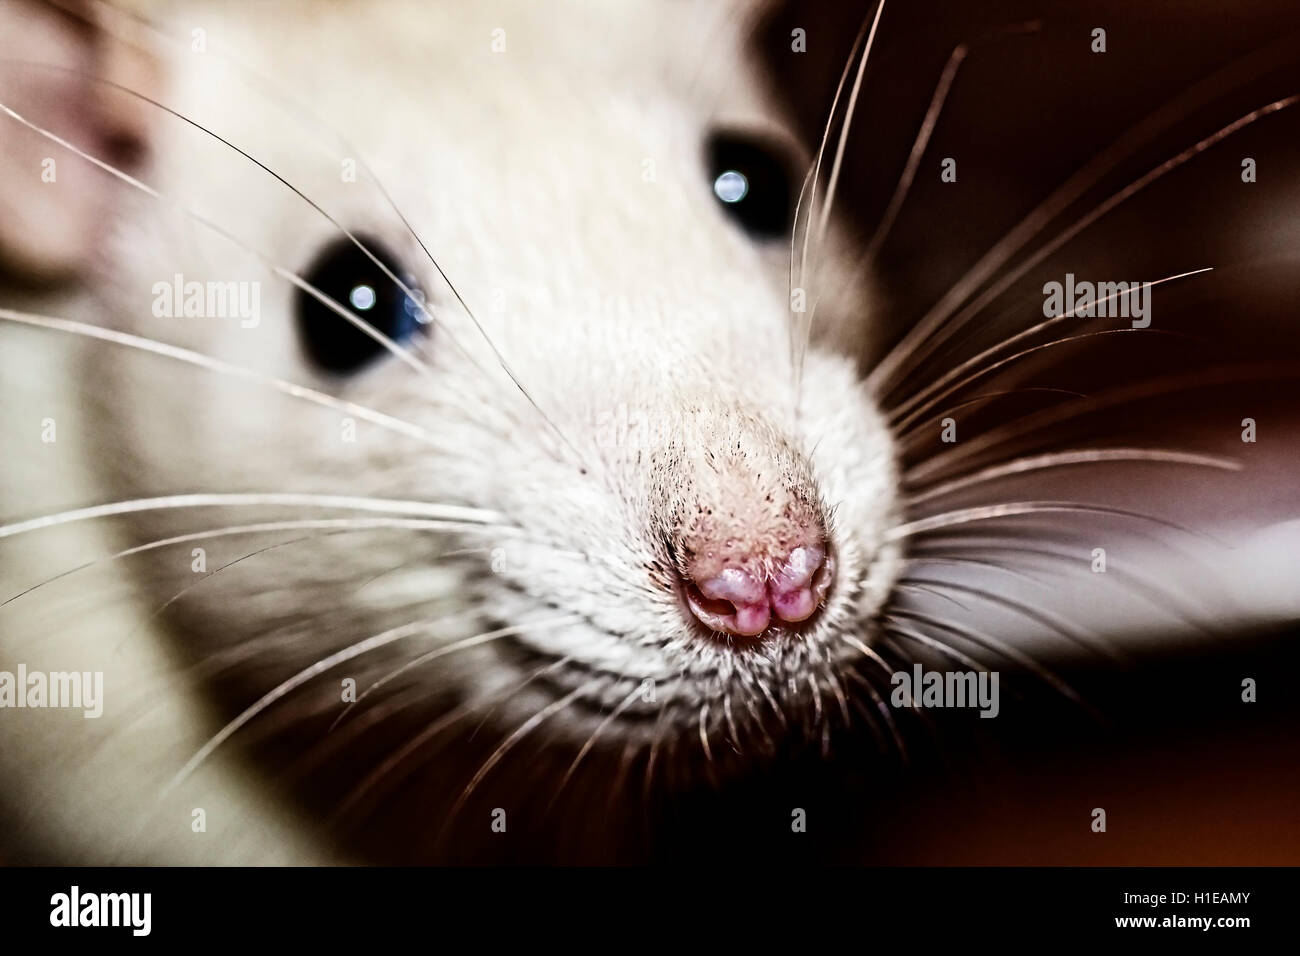 closeup of a white rats nose Stock Photo